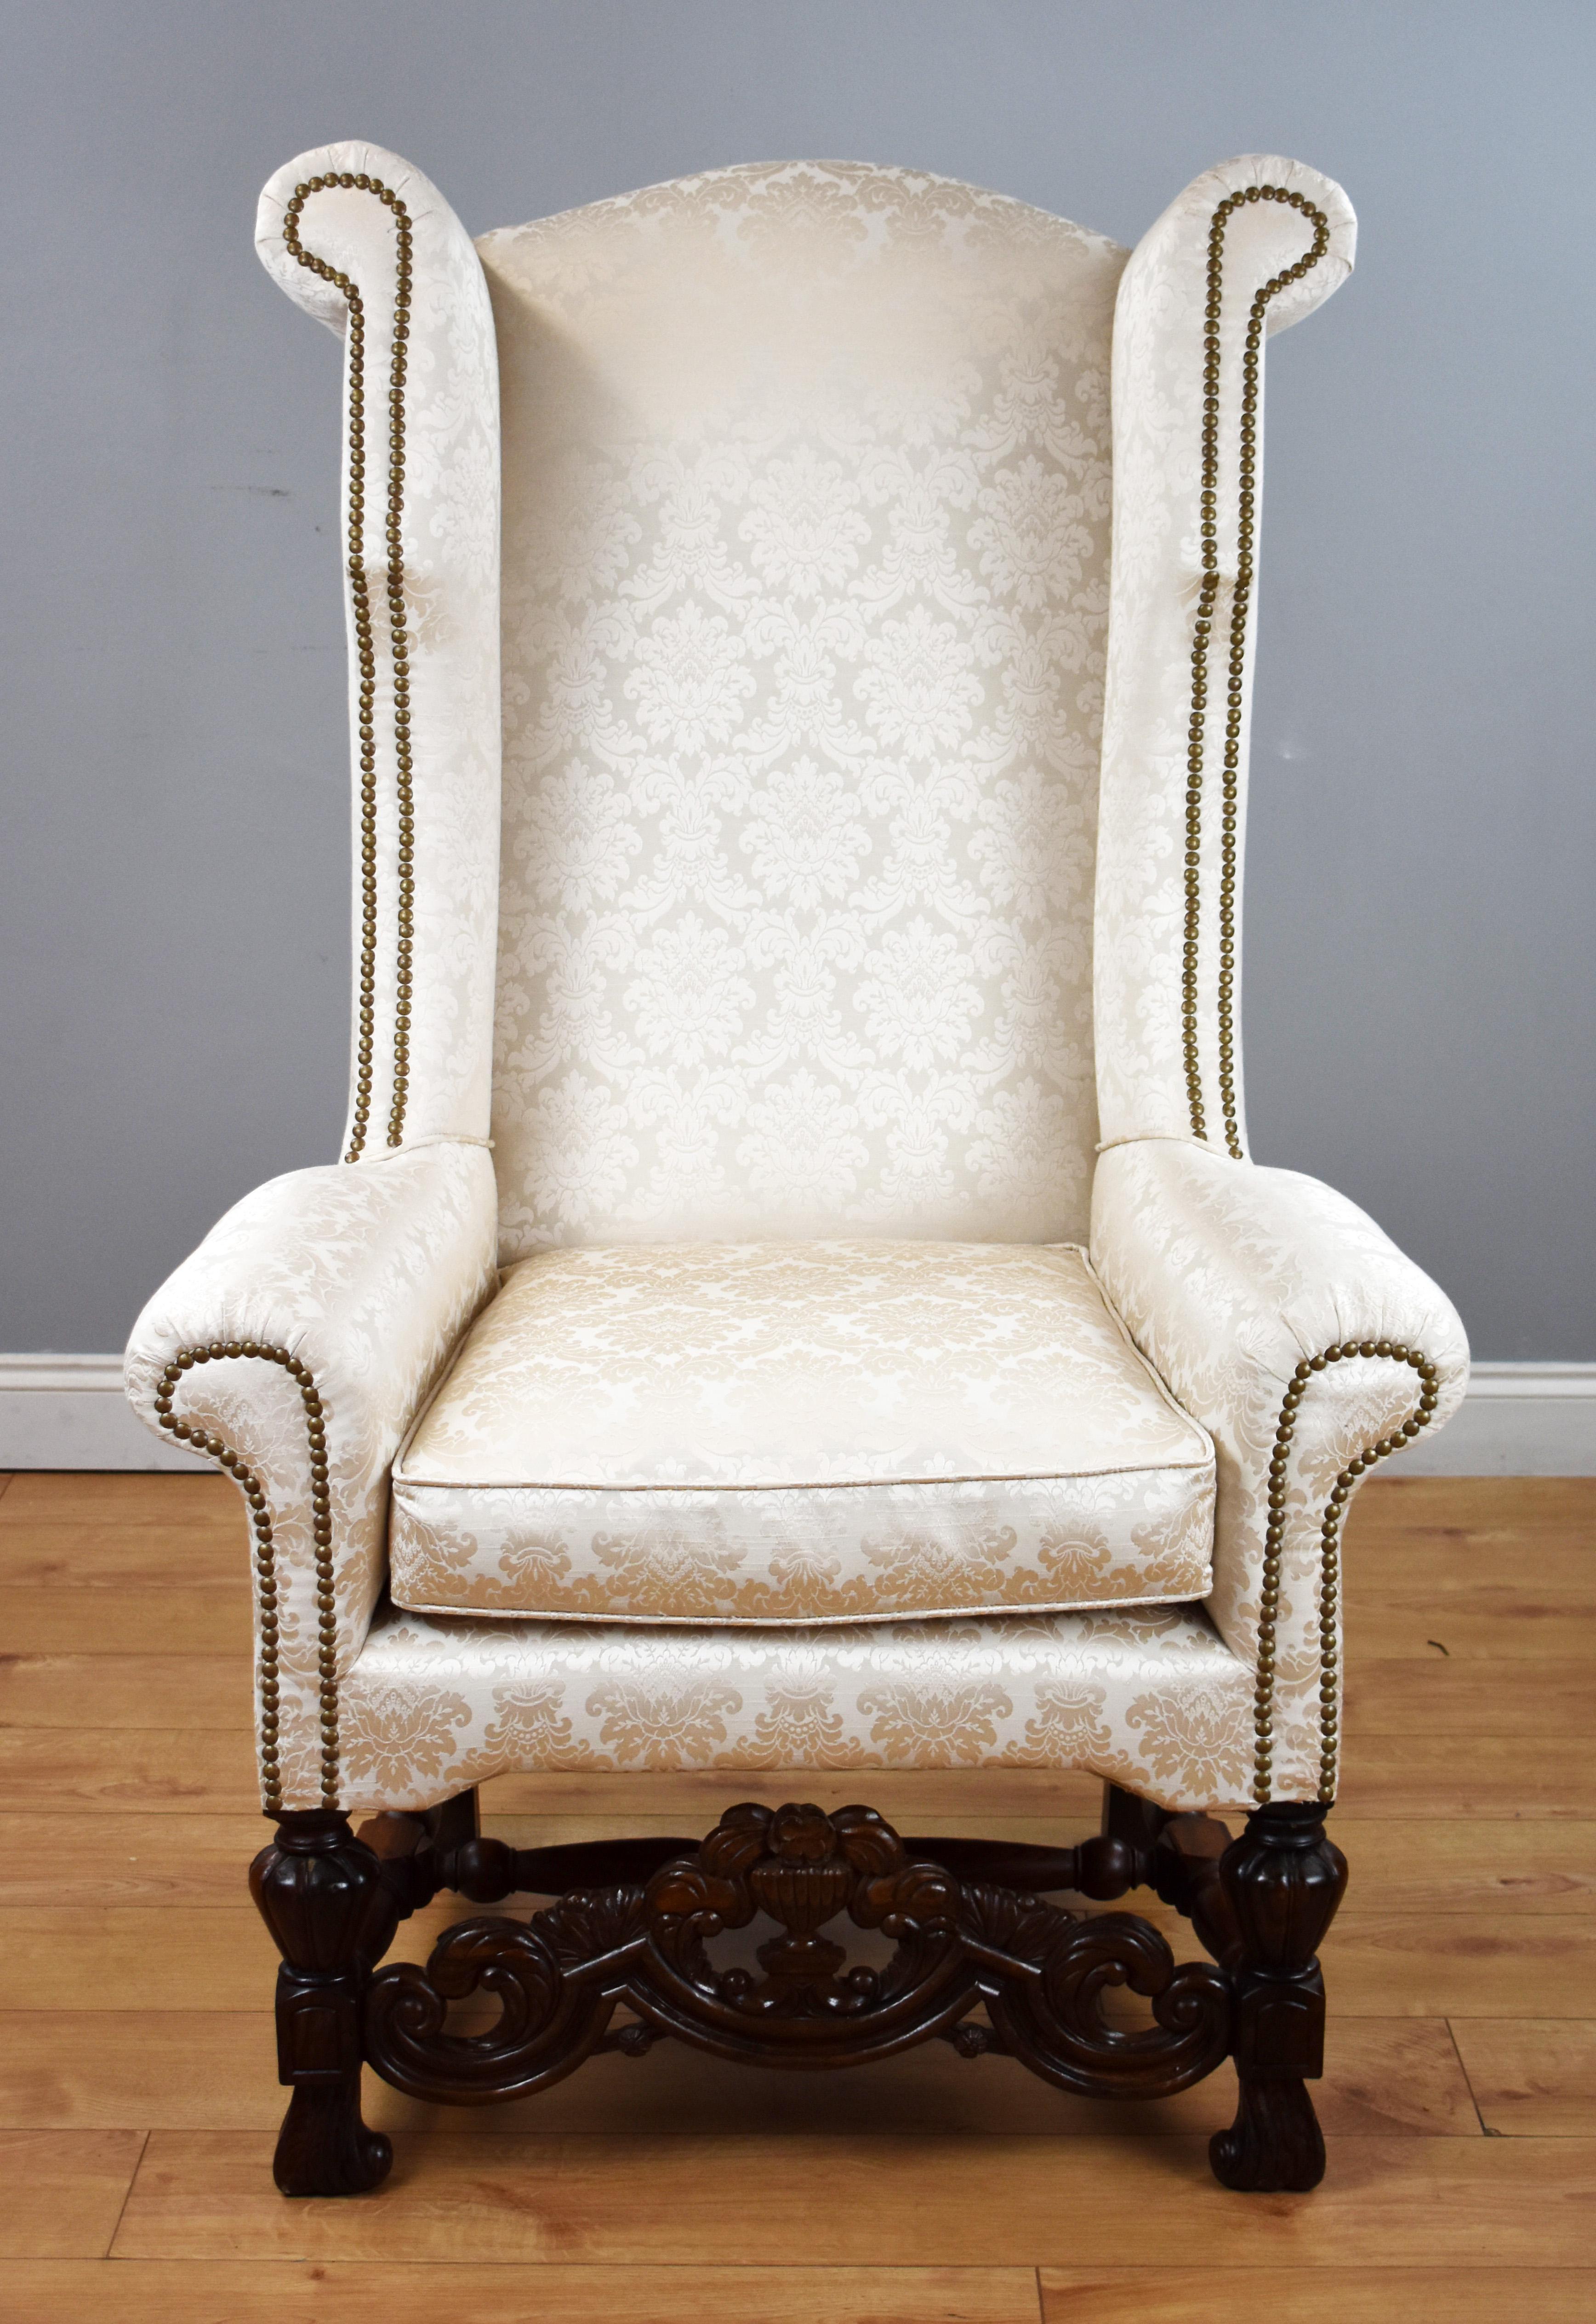 Zum Verkauf steht ein hochwertiger Ohrensessel im karolingischen Stil des 19. Jahrhunderts mit einer hohen Rückenlehne über einem Sitzkissen und einer kunstvoll geschnitzten Bahre, die die gedrechselten Beine verbindet. Der Stuhl ist in einem sehr